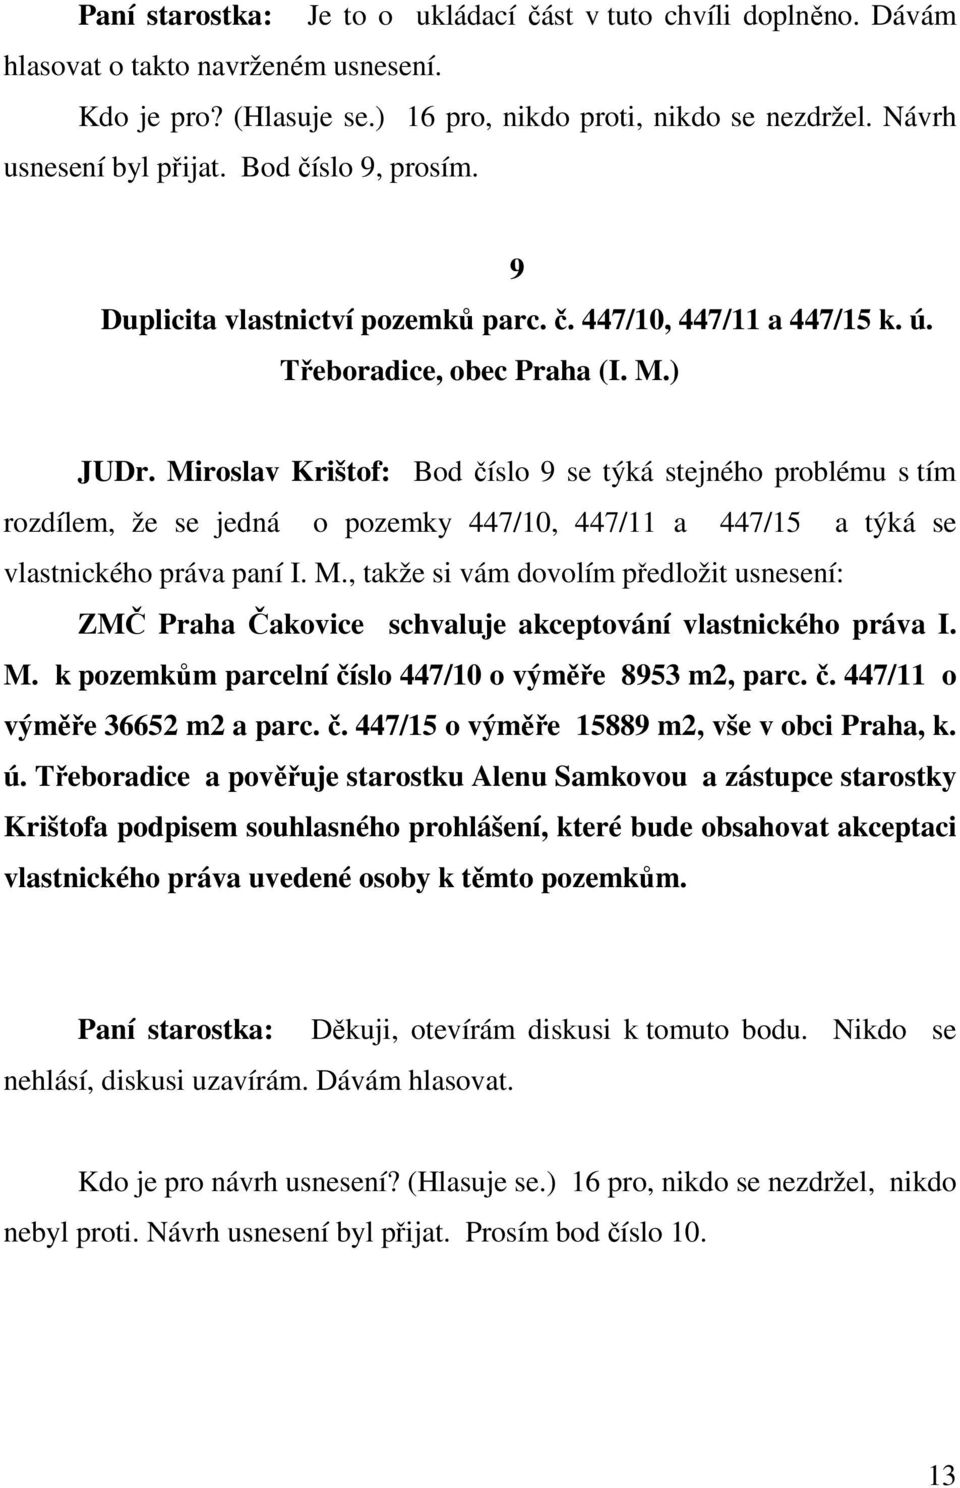 Miroslav Krištof: Bod číslo 9 se týká stejného problému s tím rozdílem, že se jedná o pozemky 447/10, 447/11 a 447/15 a týká se vlastnického práva paní I. M.